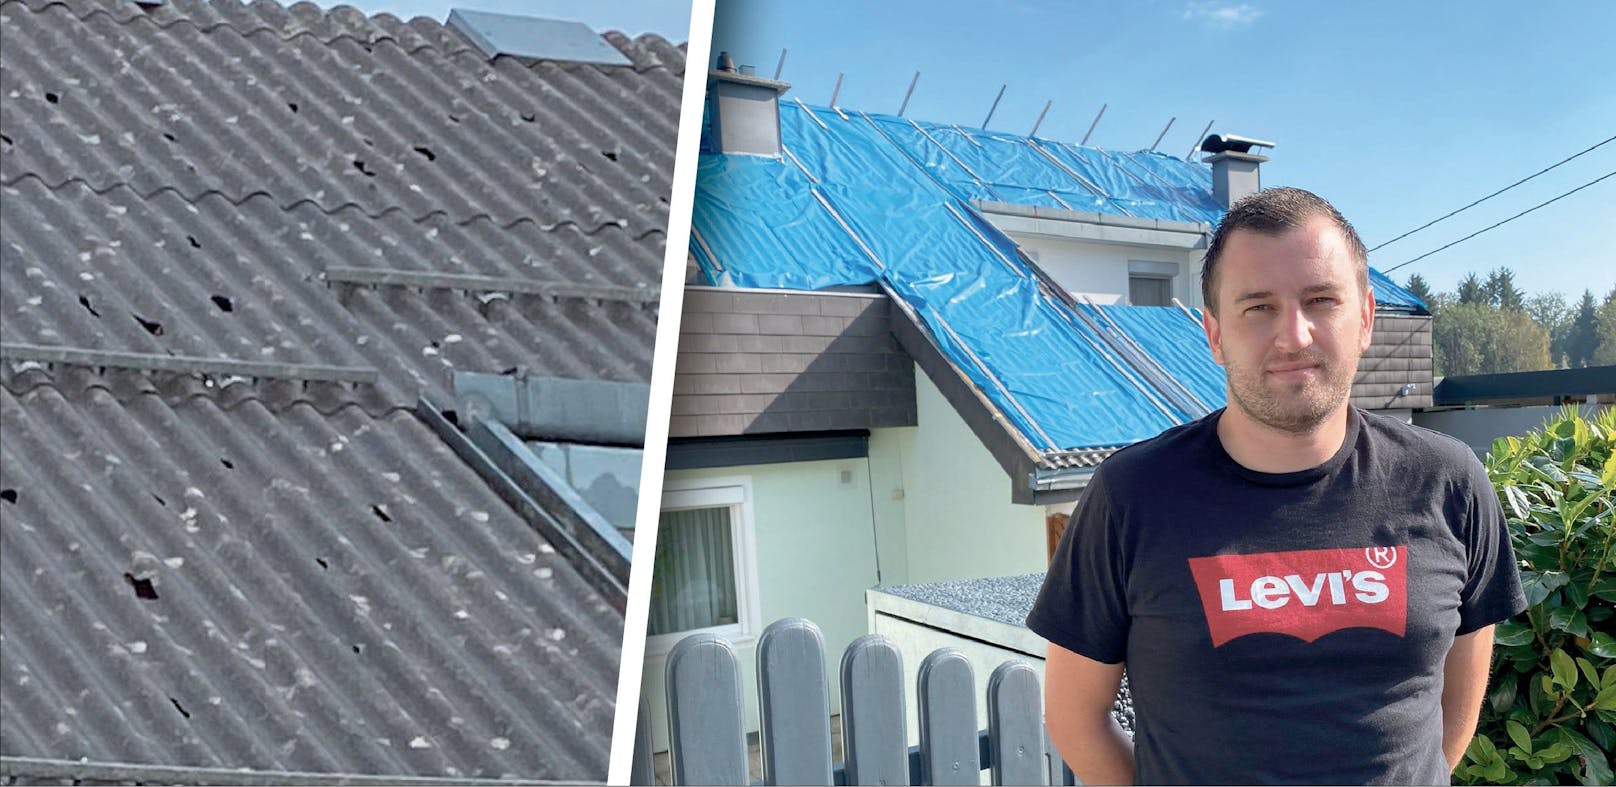 Die Hagelschäden am Dach von Florian Steidl (29) können erst im Frühjahr repariert werden. Die Planen bleiben daher auch über den Winter drauf.